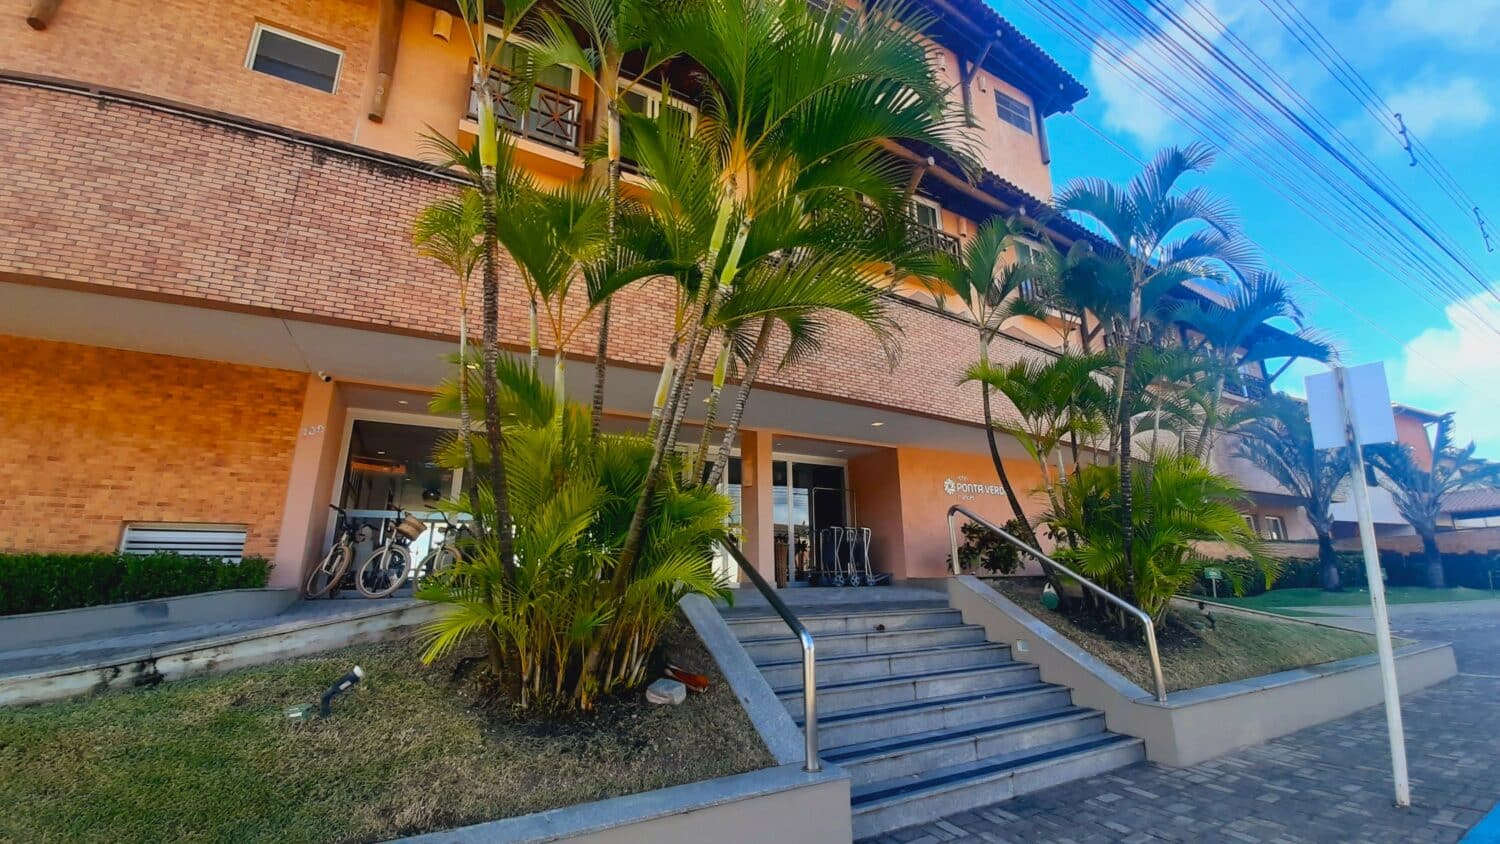 Fachada do Hotel Ponta Verde Francês, contendo uma escada com jardins nos dois lados, e o prédio do hotel possui portas de vidro no térreo e quartos com sacadas nos andares superiores